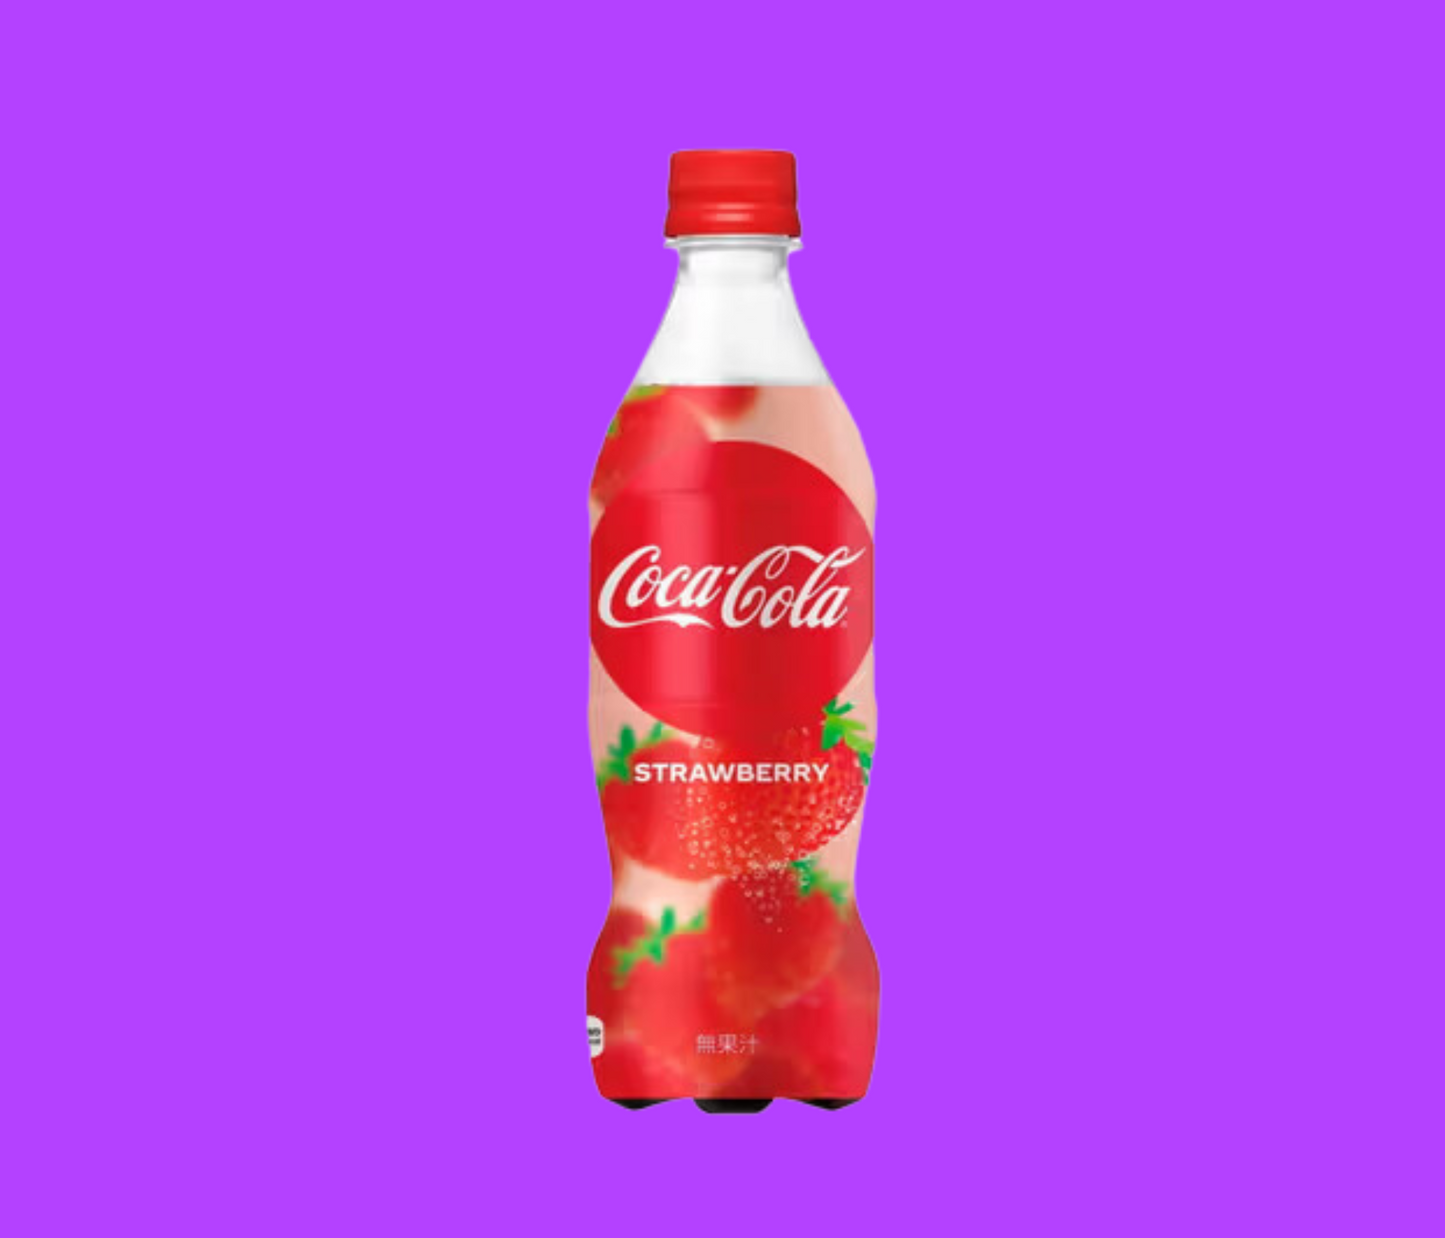 Coke Strawberry Flavor Bottle